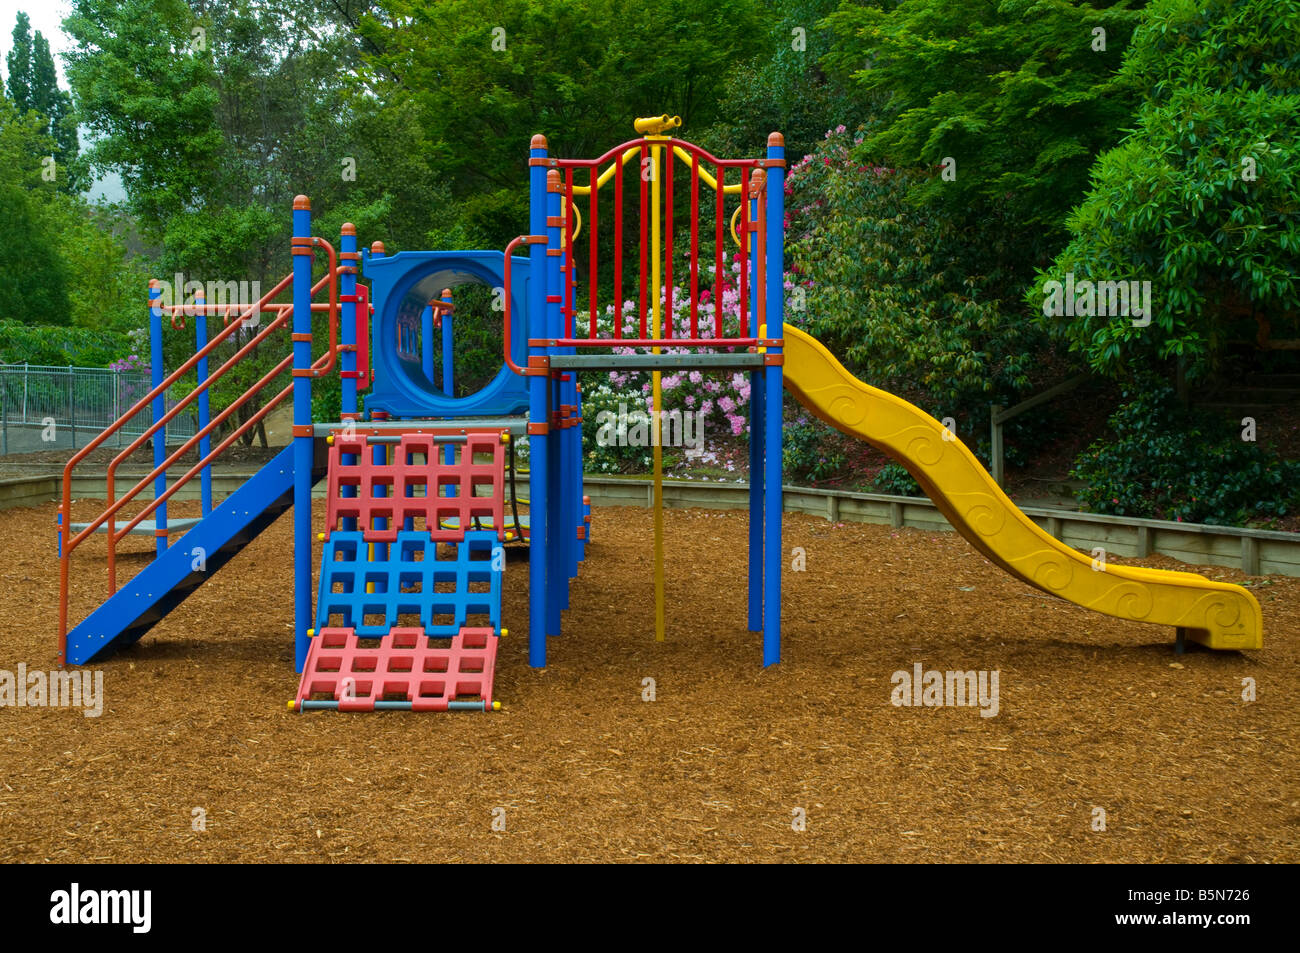 Modern plastic children's playground equipment Stock Photo